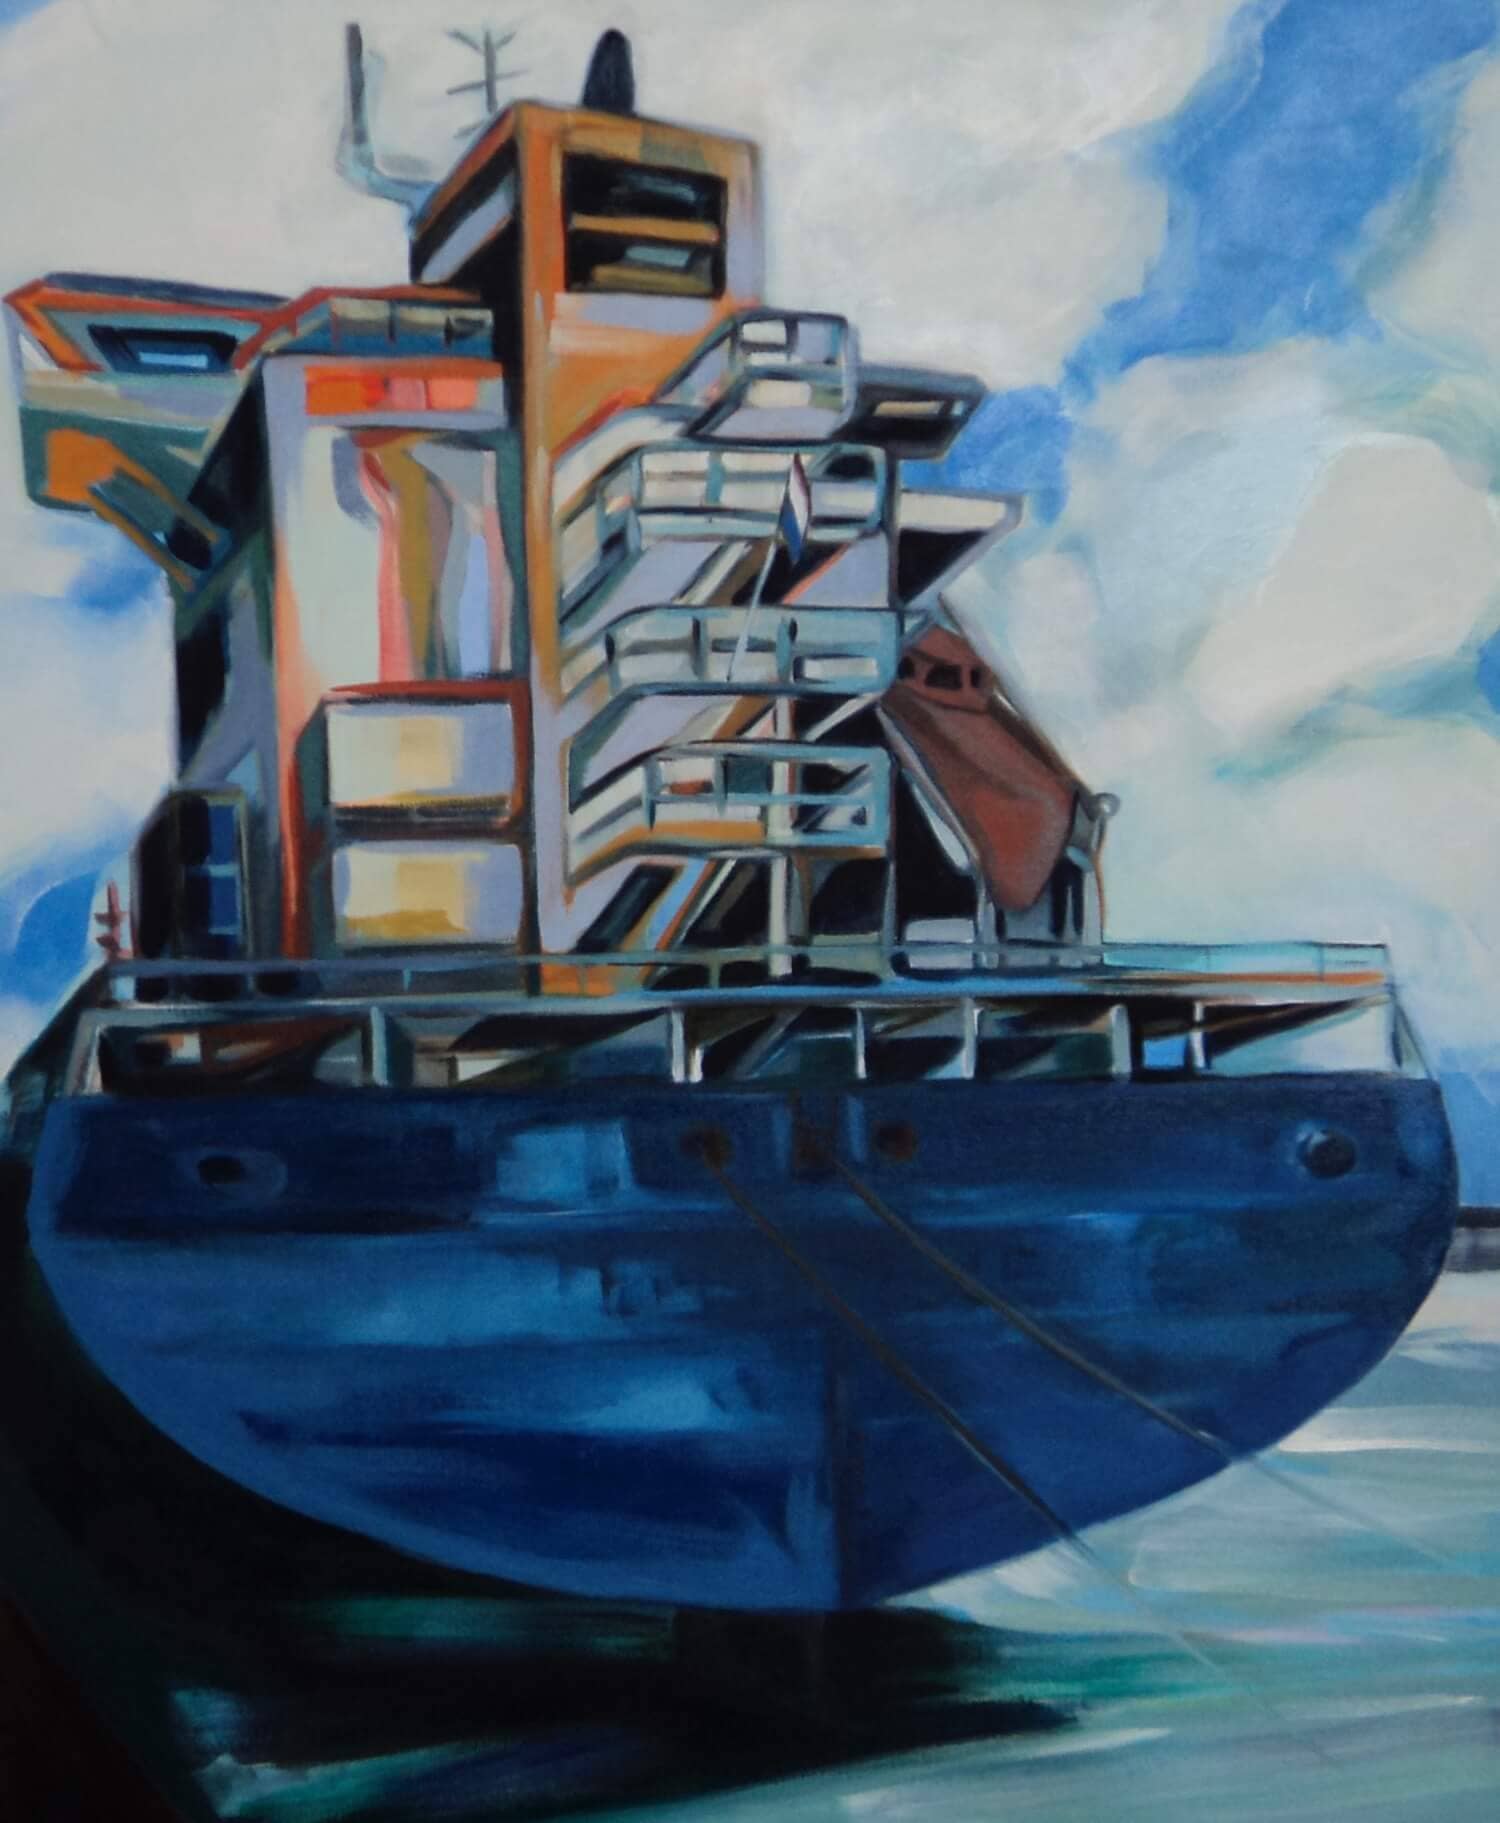 Ensemble (maritiem olieverfschilderij in de haven van Rotterdam - Jayven Art)